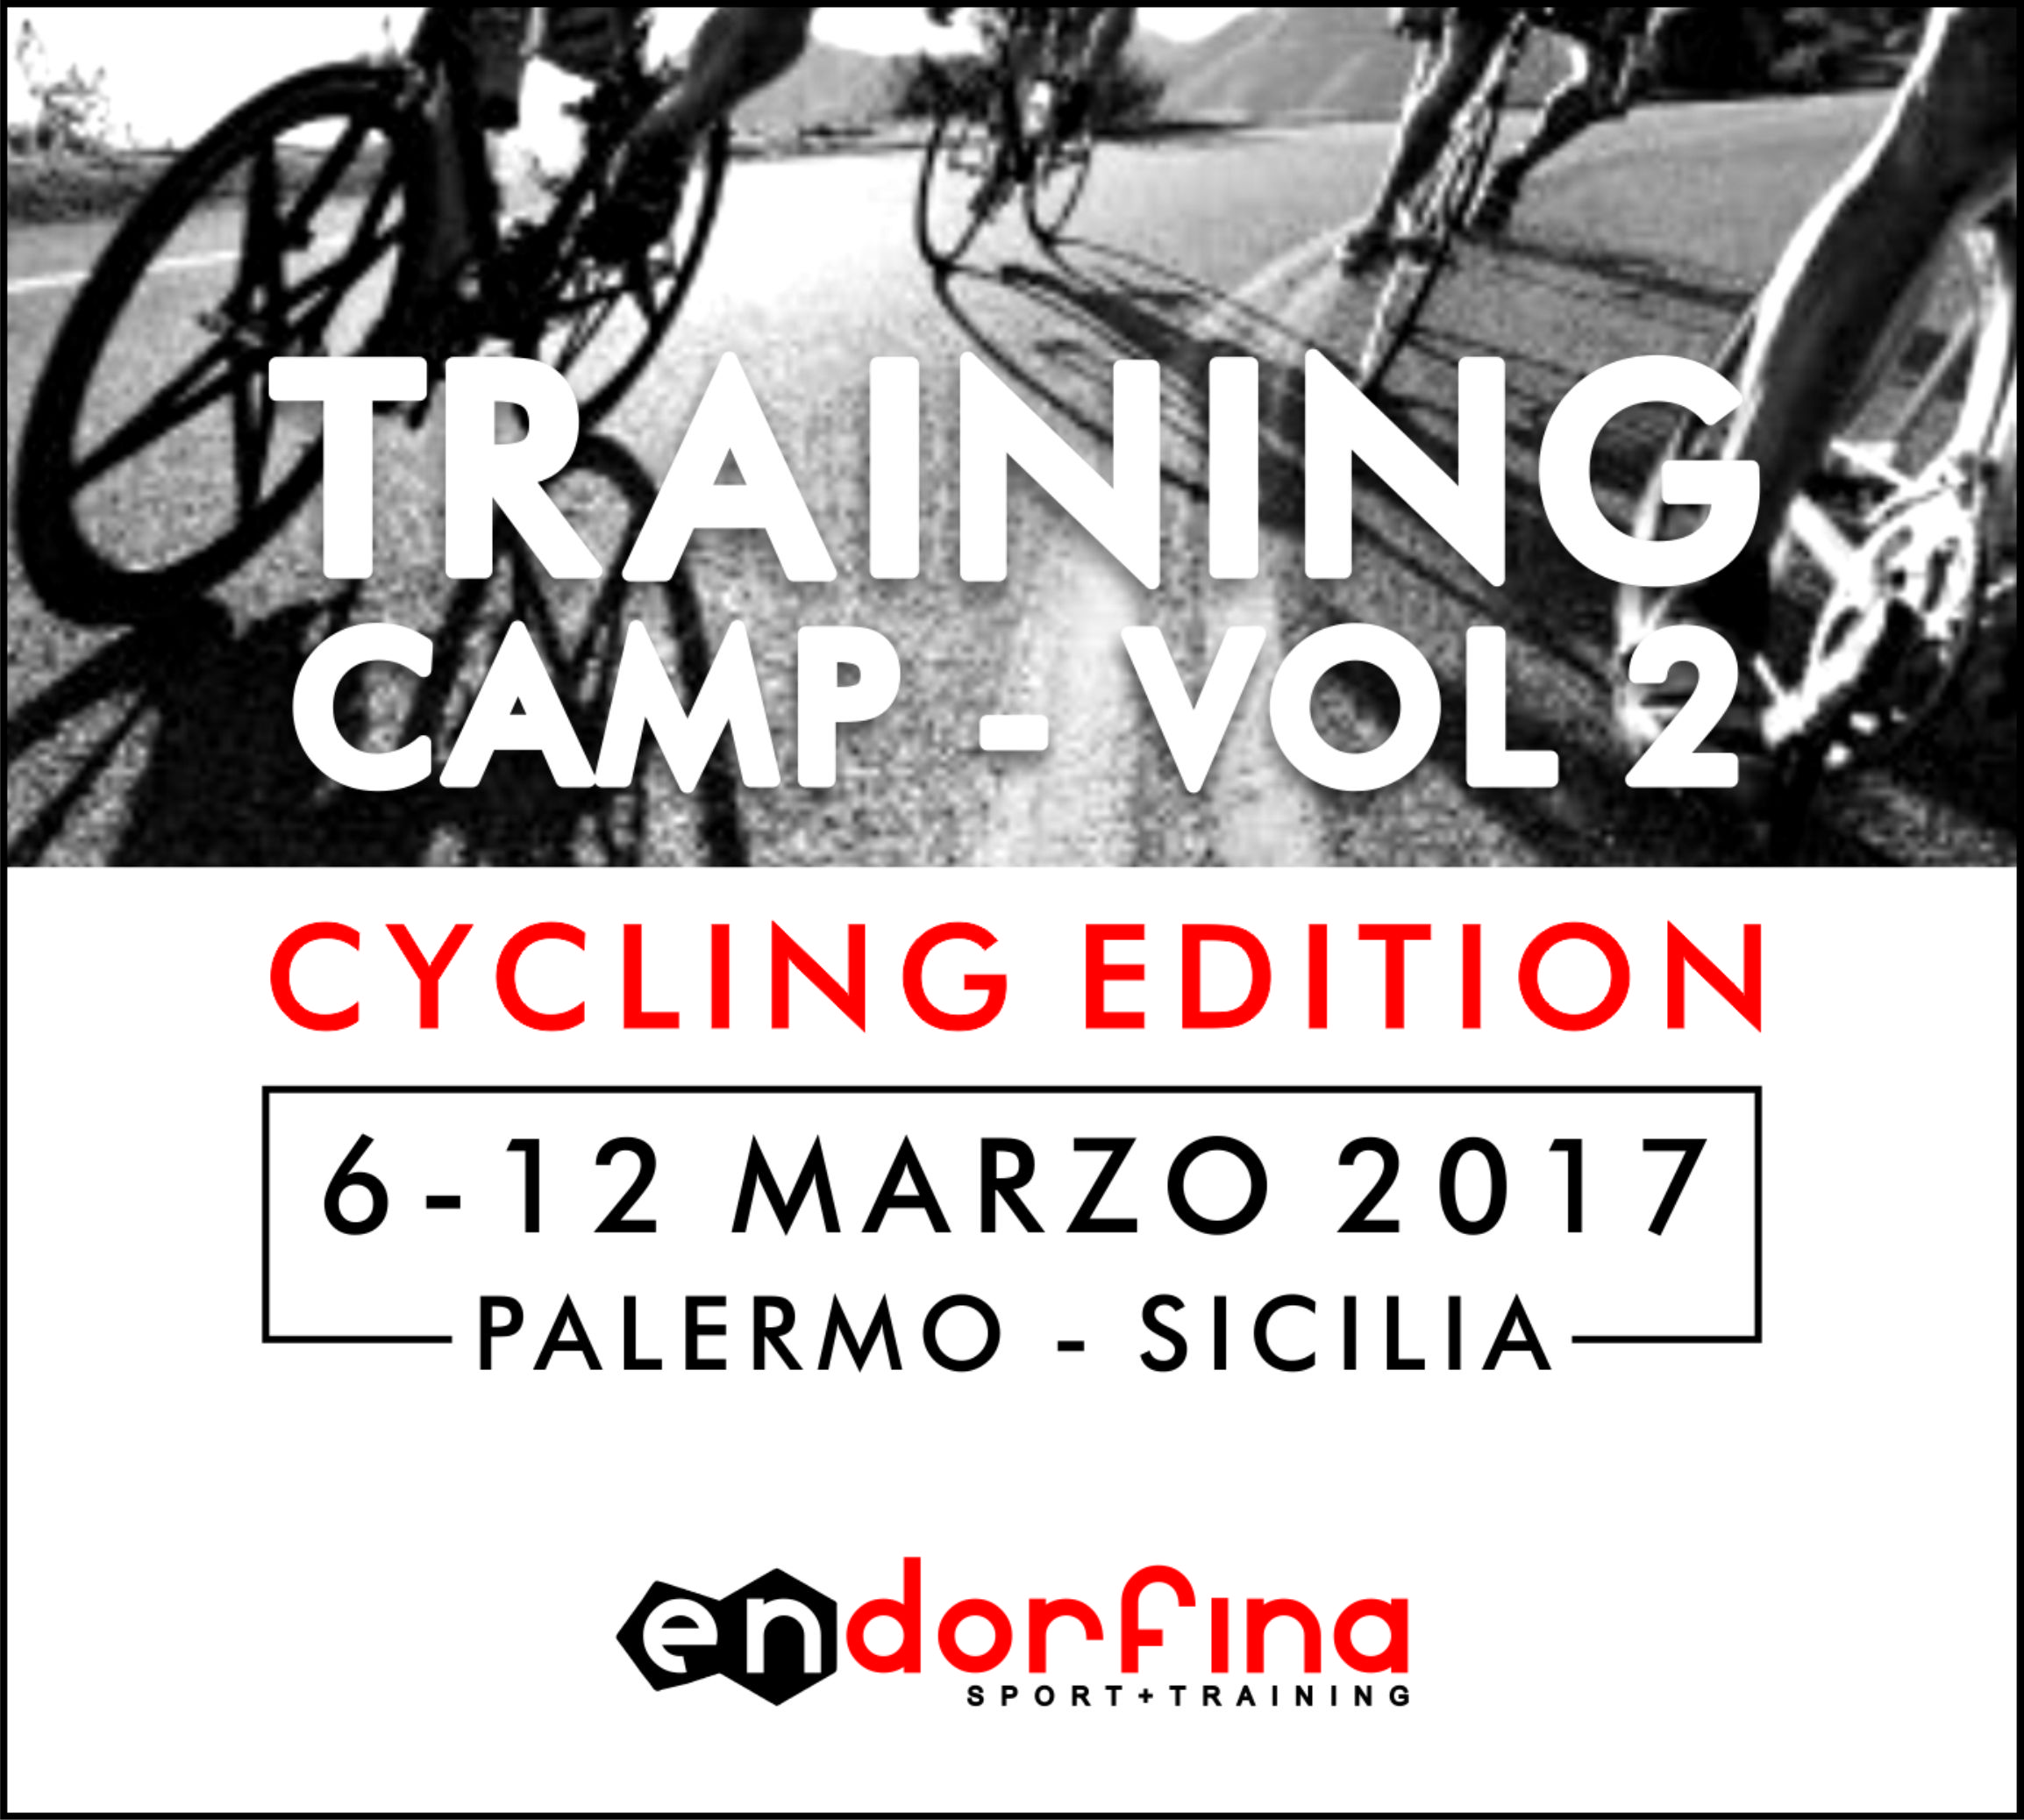 Al momento stai visualizzando TRAINING CAMP VOL. 2 CYCLING EDITION 6-12 MARZO 2017